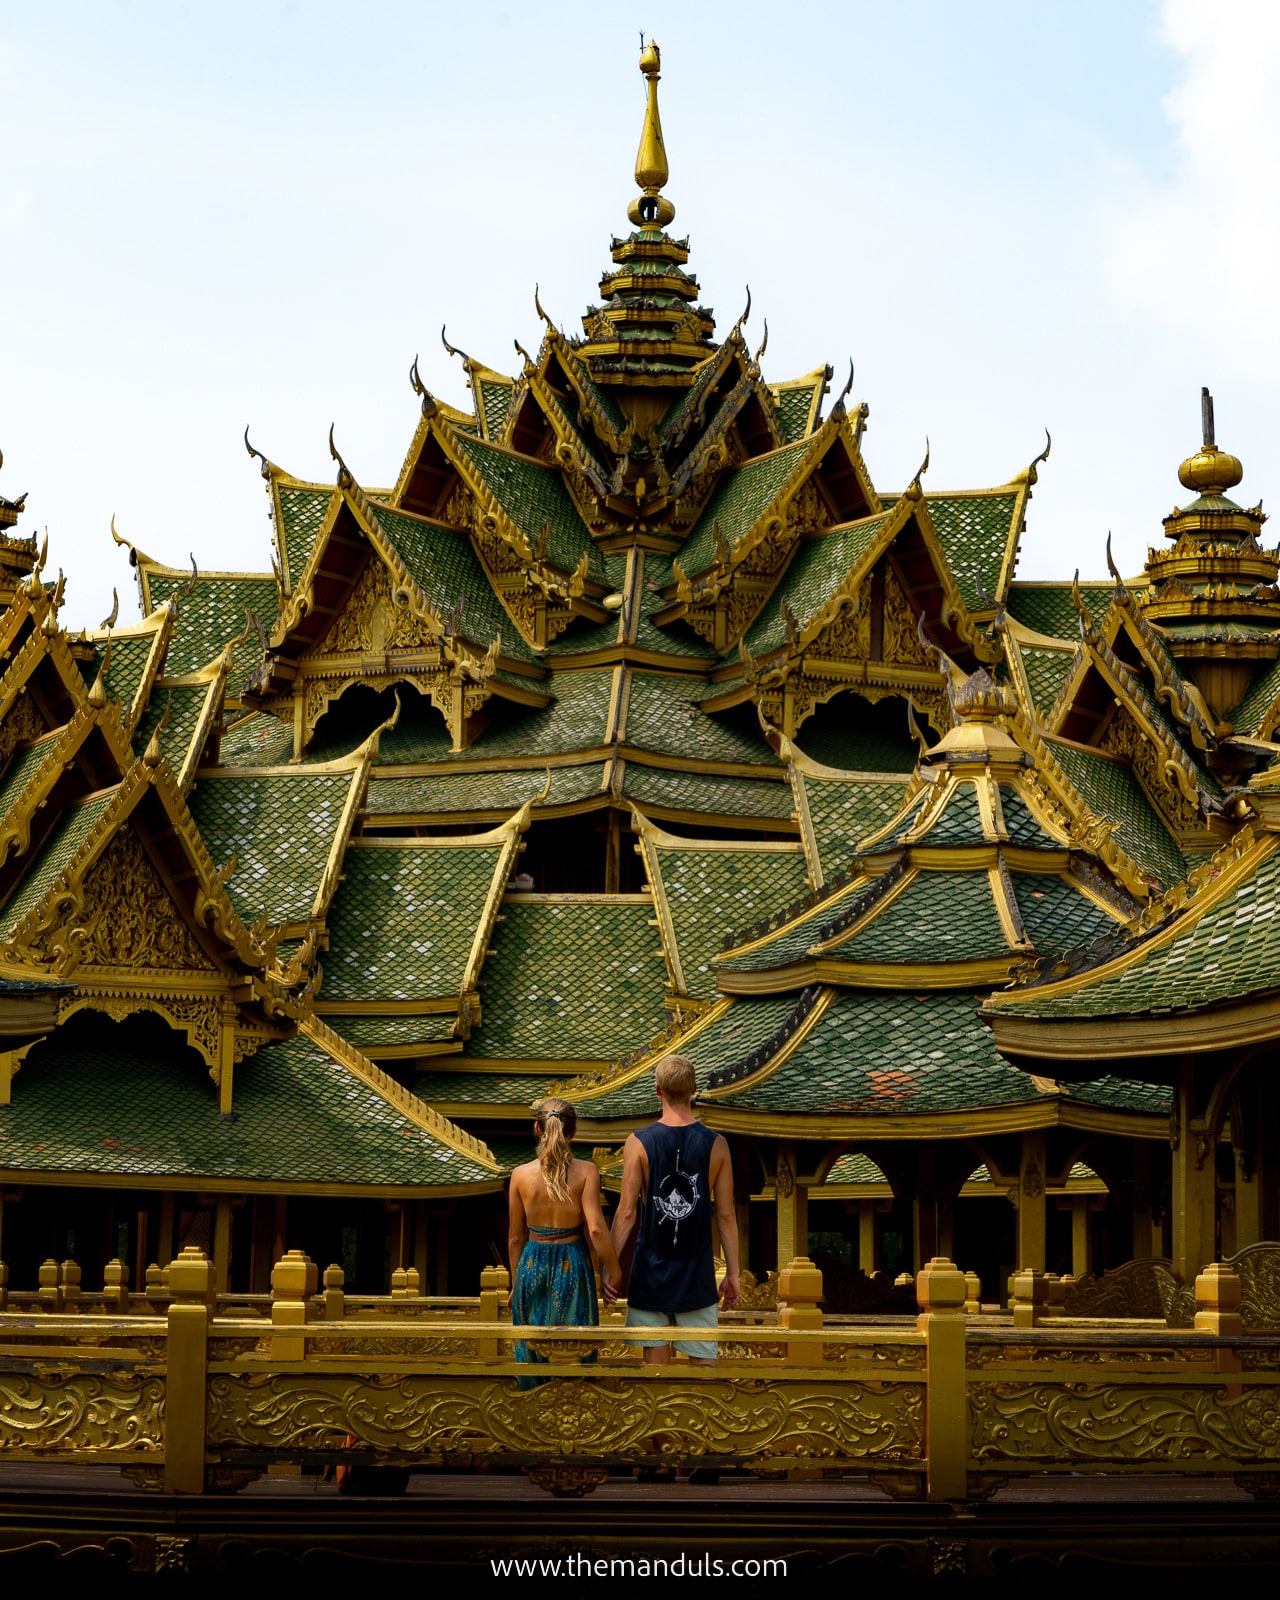 Bangkok Ancient City things to do in bangkok itinerary top attractions bangkok thai temples